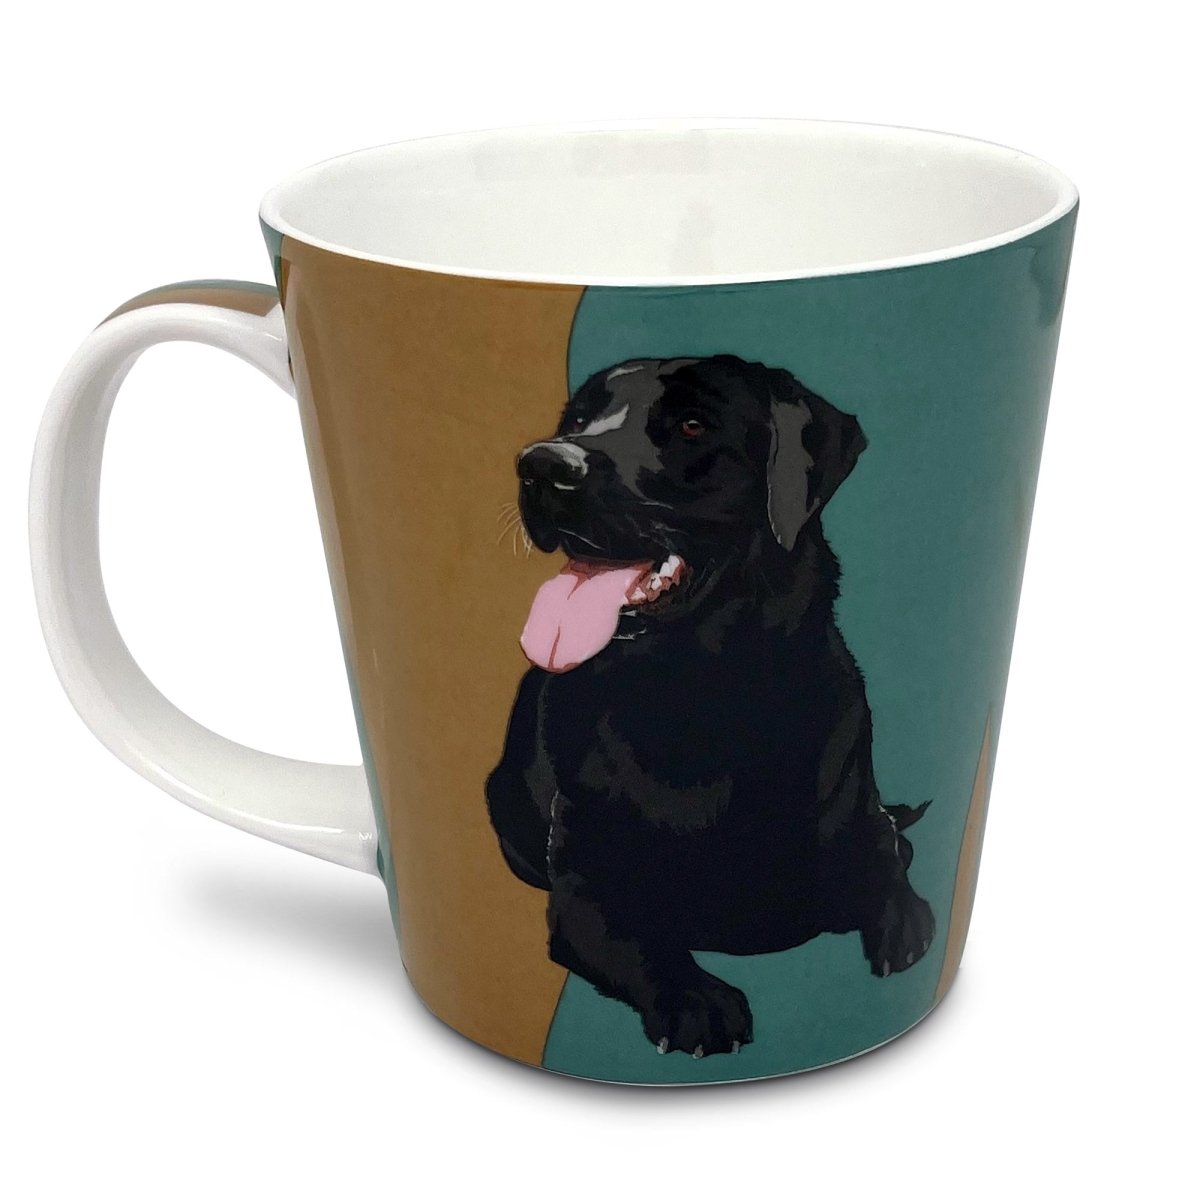 Black Labrador Dog Mug by Leslie Gerry